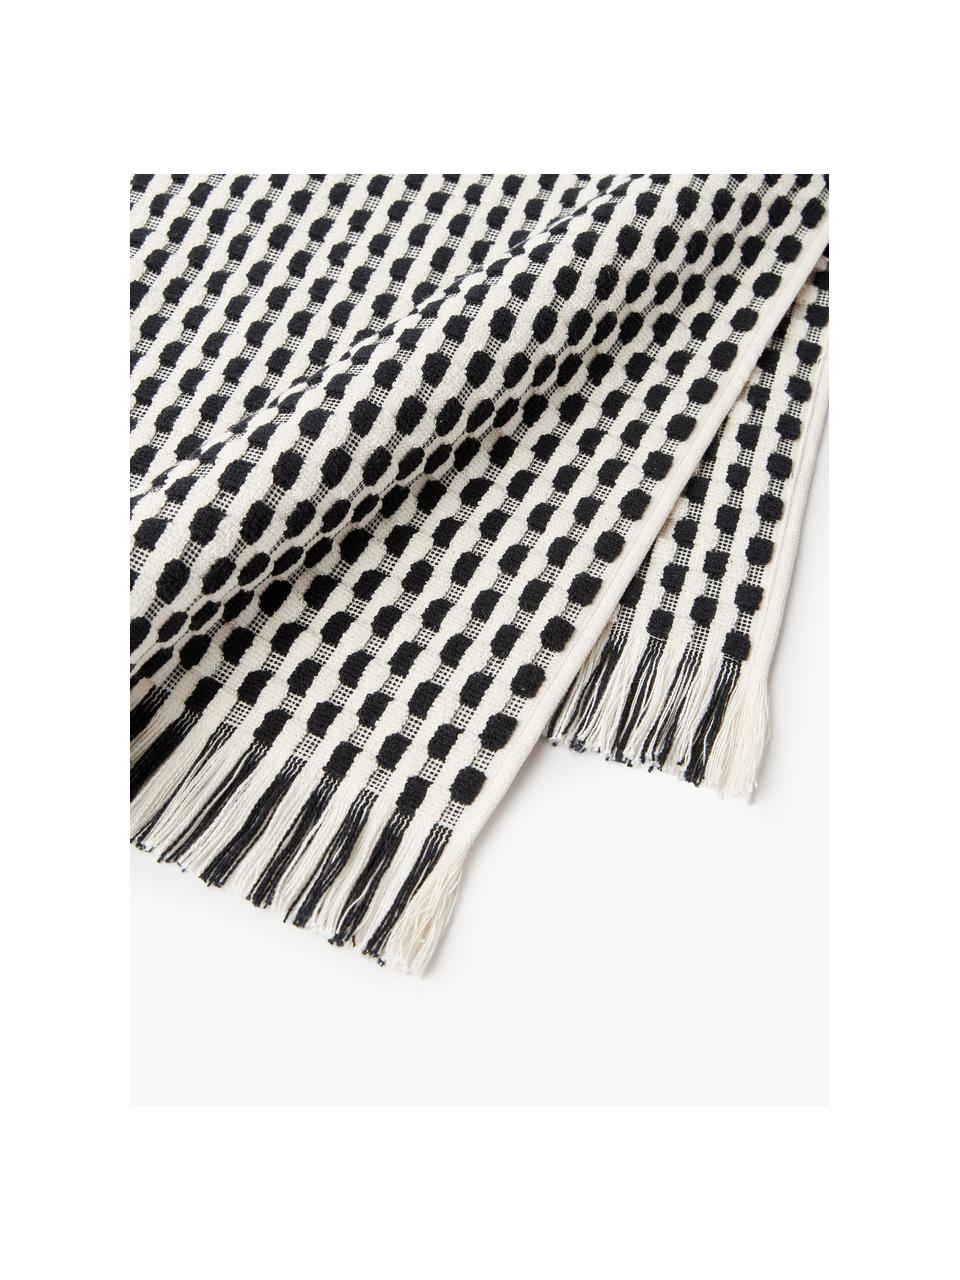 Súprava uterákov s reliéfnou štruktúrou Juniper, 3 ks, Lomená biela, čierna, 3-dielna súprava (uterák na ruky pre hostí, uterák na ruky, osuška)